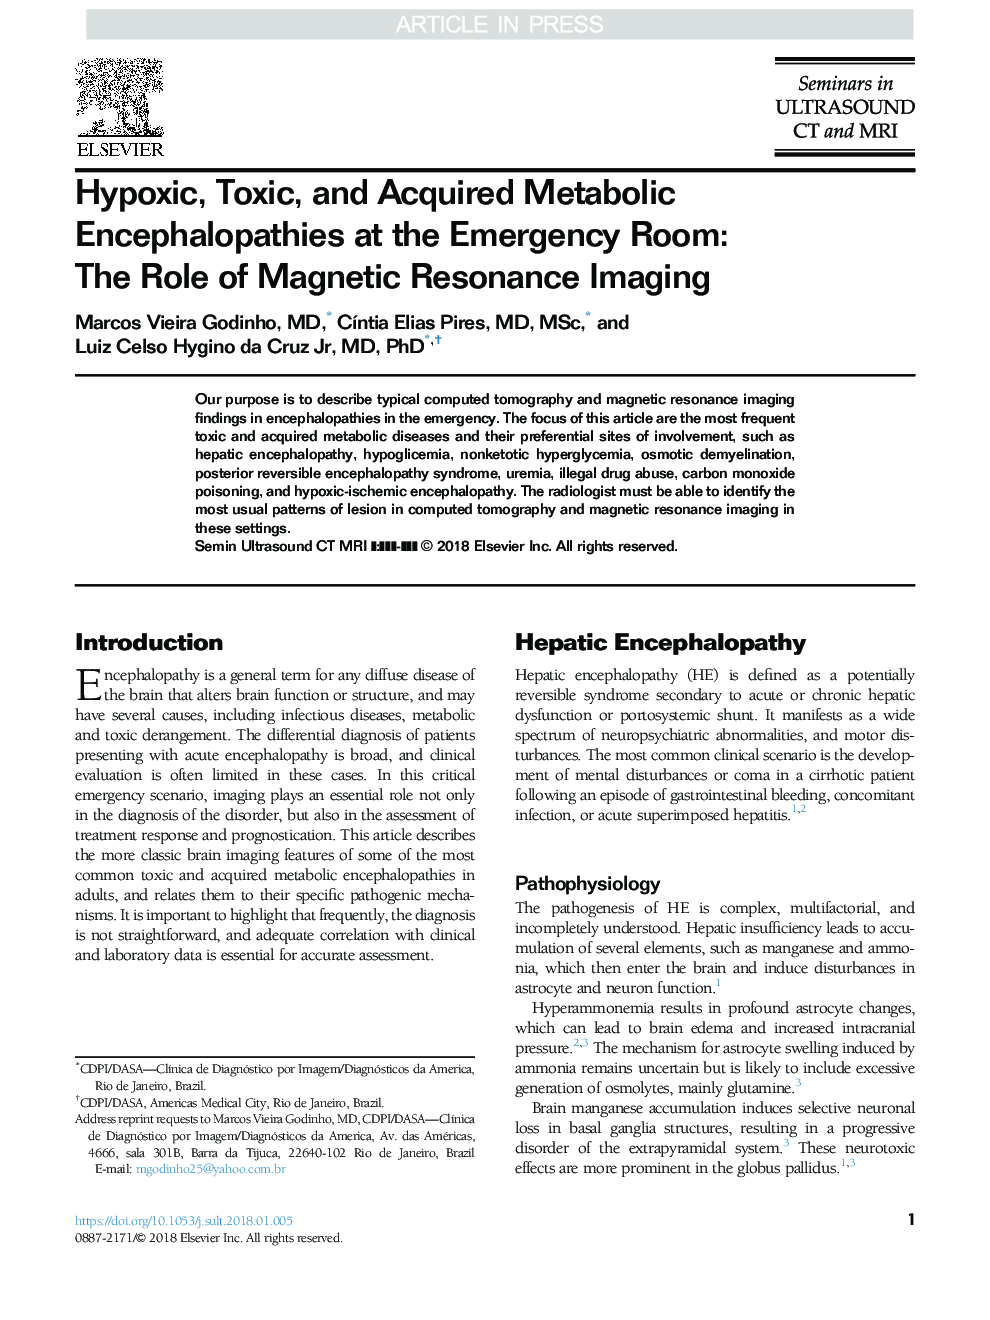 هیپوکسیک، سمی و انسفالوپاتی متابولیک به دست آمده در اتاق اورژانس: نقش تصویربرداری رزونانس مغناطیسی